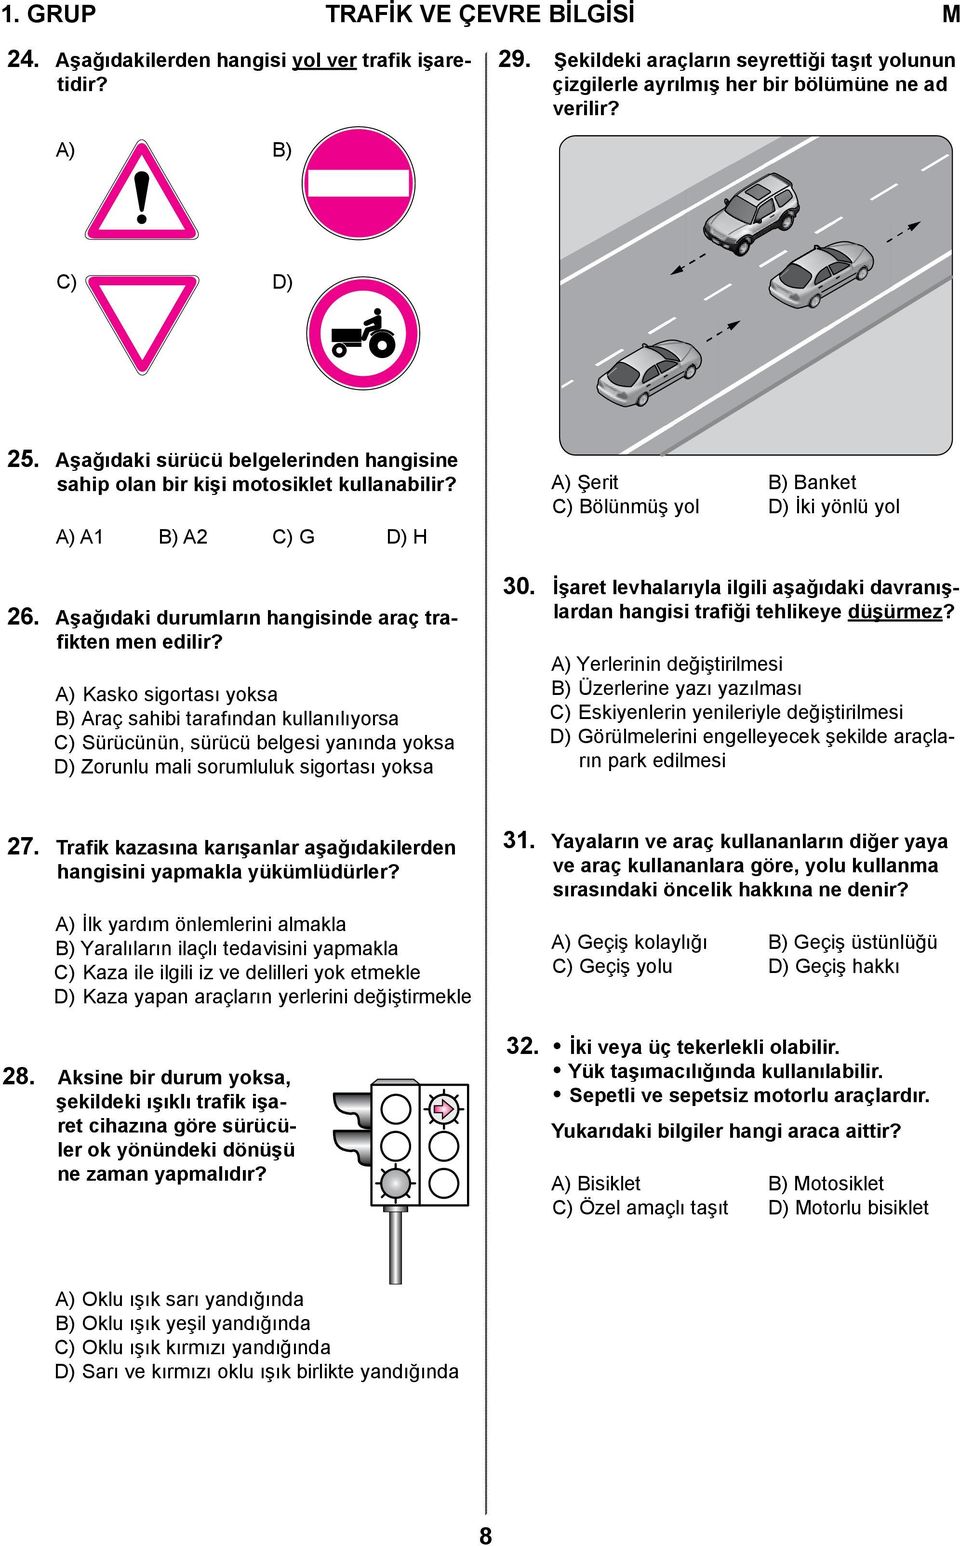 A) Kasko sigortası yoksa B) Araç sahibi tarafından kullanılıyorsa C) Sürücünün, sürücü belgesi yanında yoksa D) Zorunlu mali sorumluluk sigortası yoksa A) Şerit B) Banket C) Bölünmüş yol D) İki yönlü